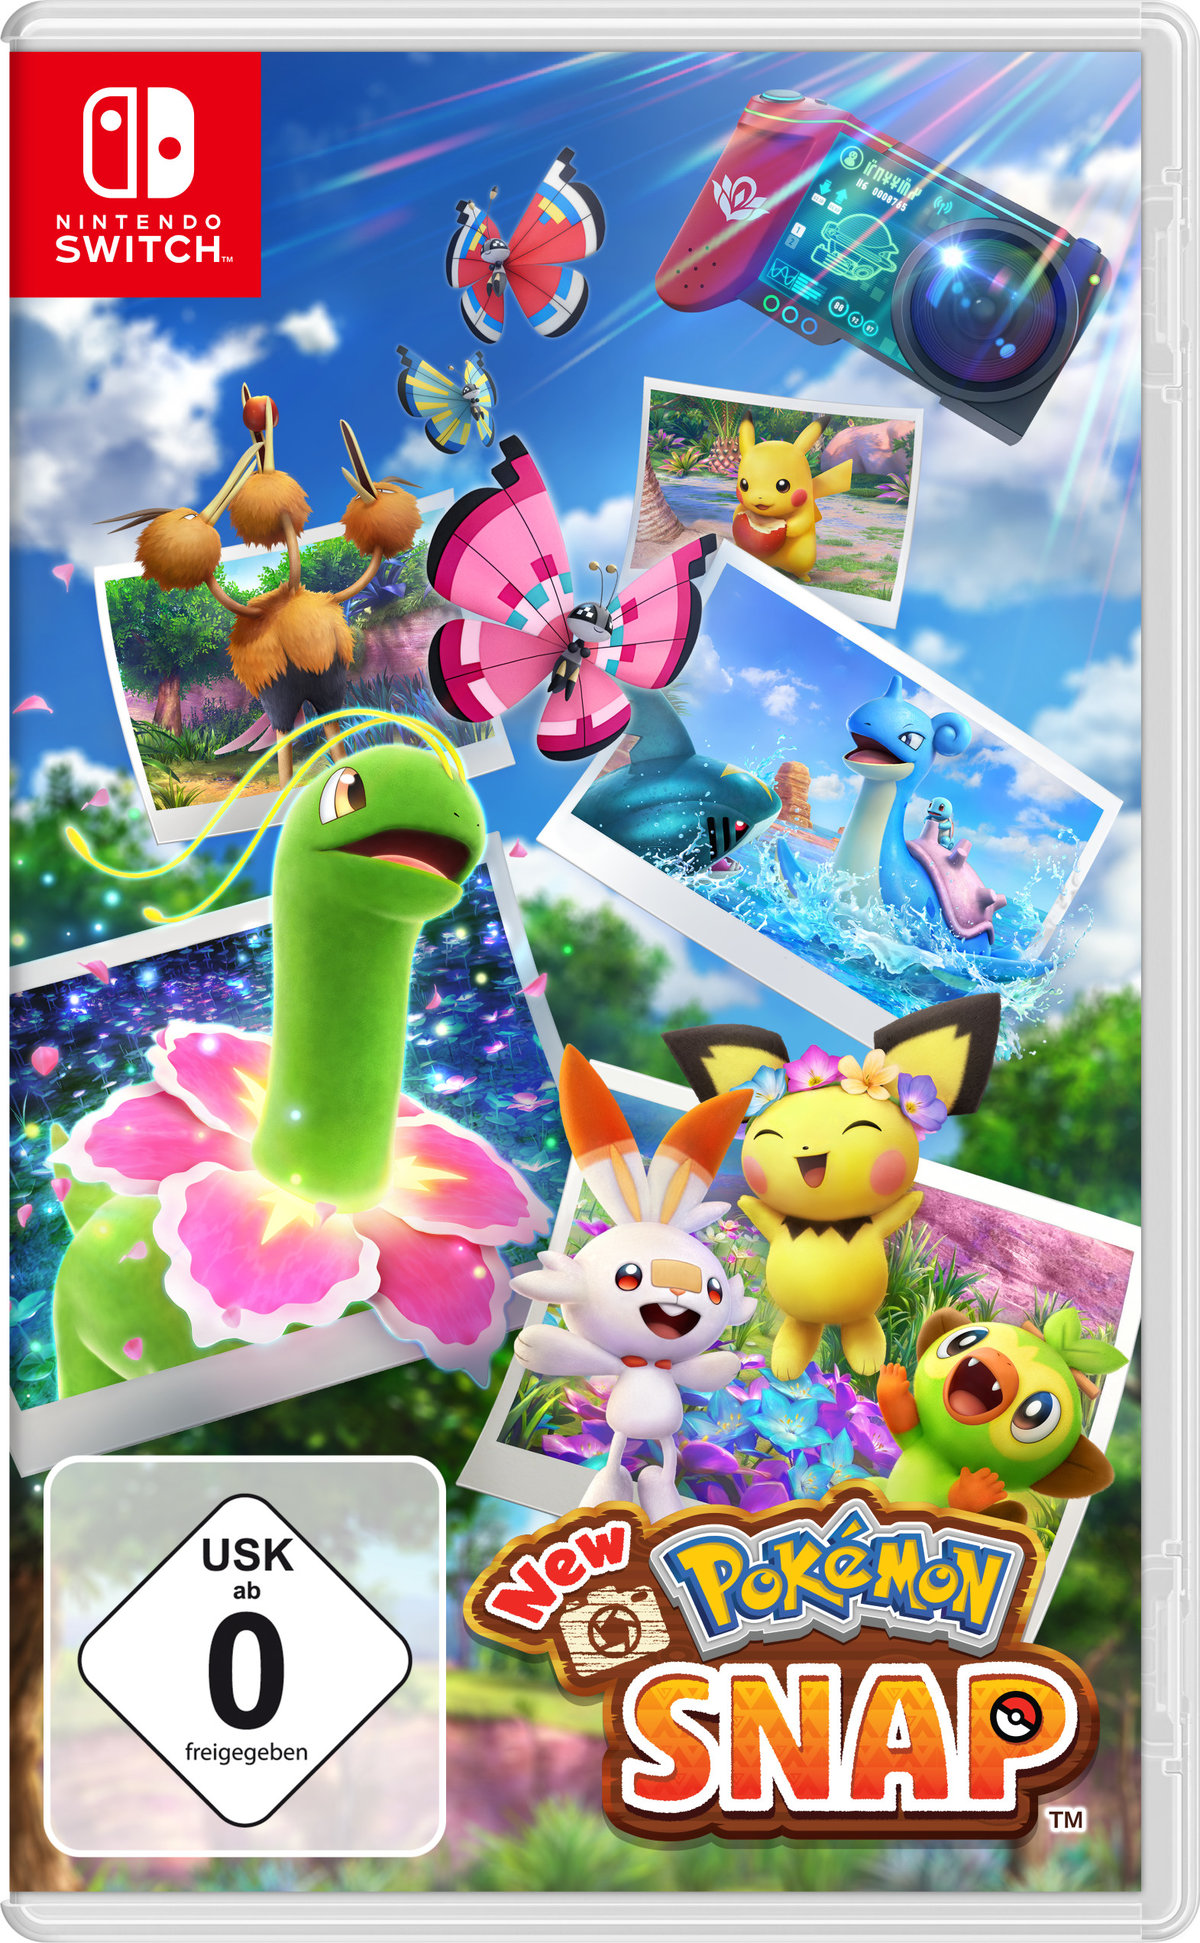 Switch] Switch New [Nintendo Snap - Pokemon